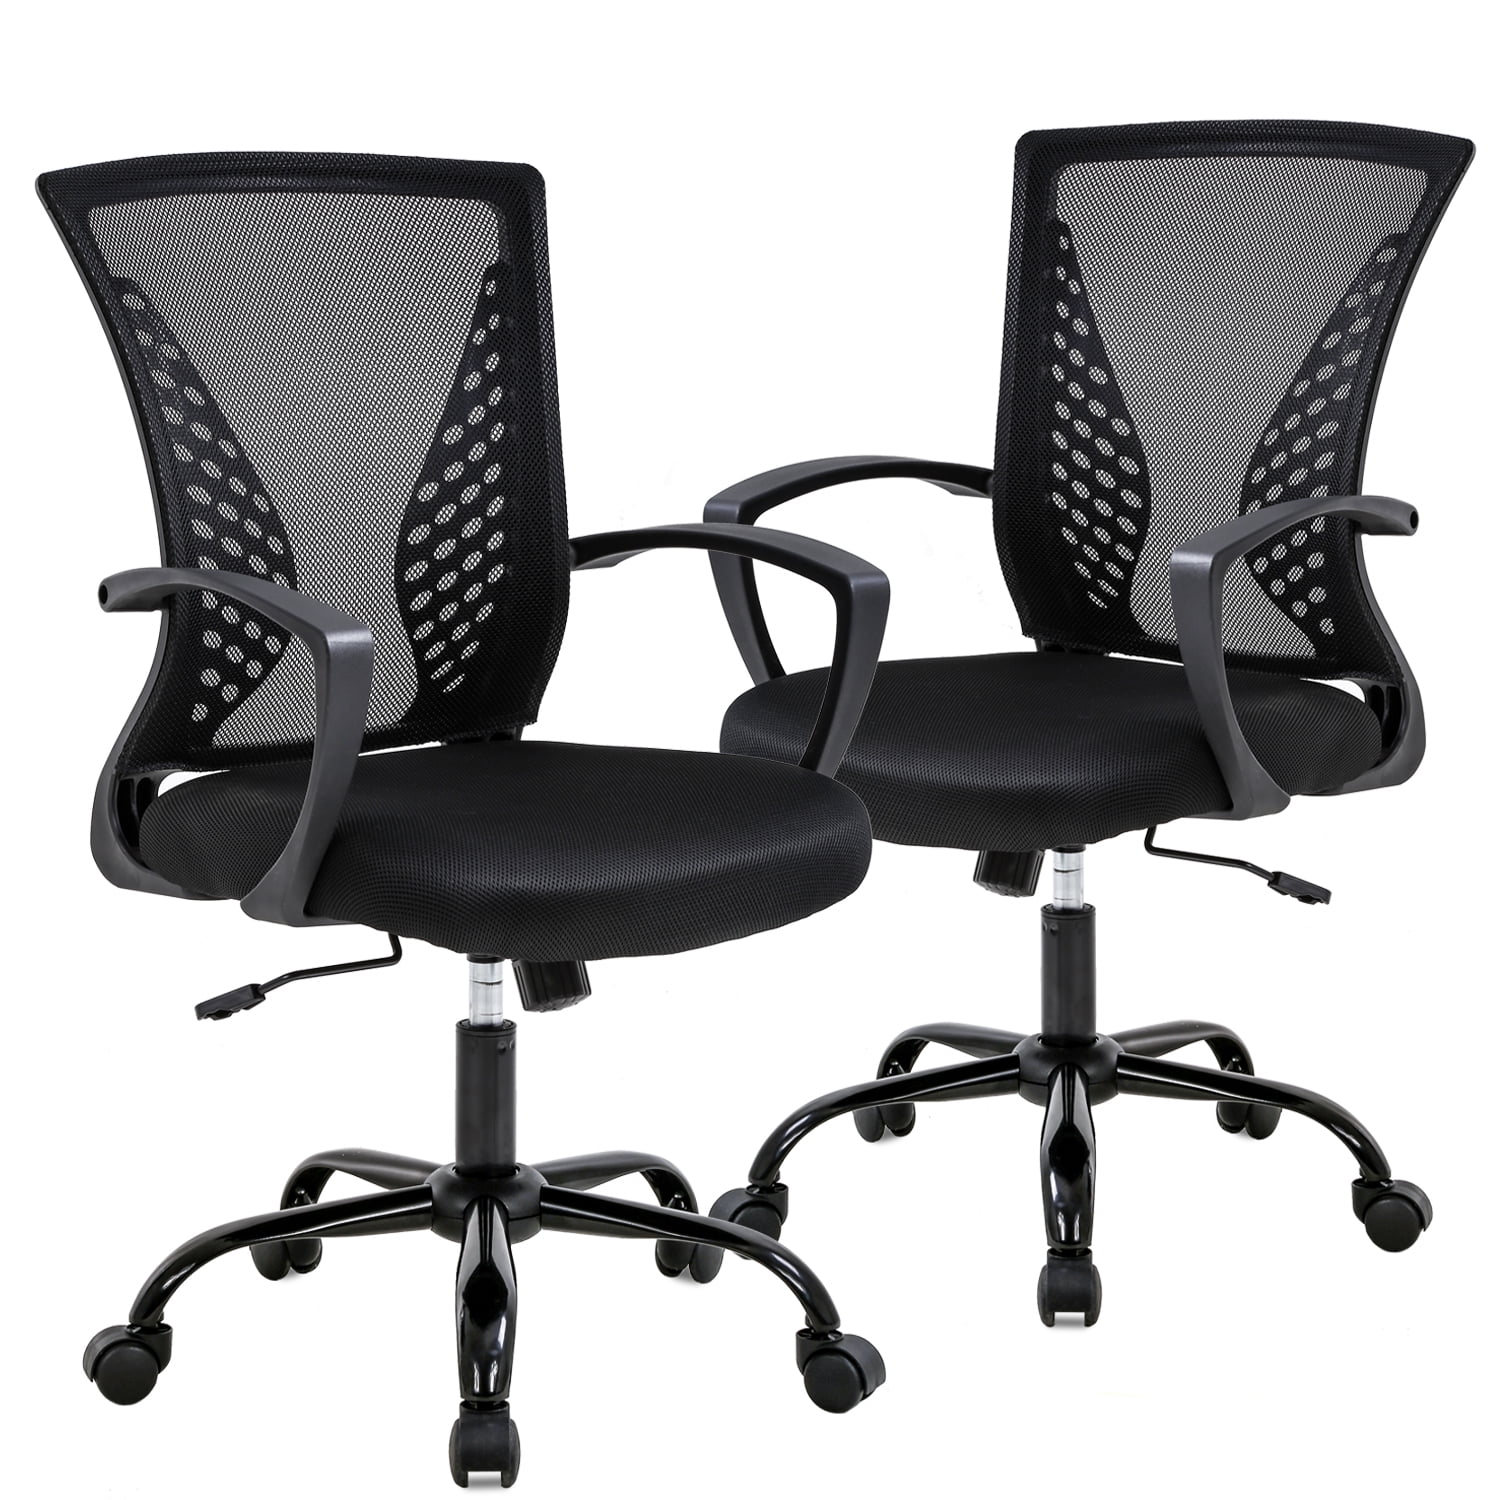 Ergonomic Mid-back Mesh Computer Office Work Chair Desk Task Swivel Black New 